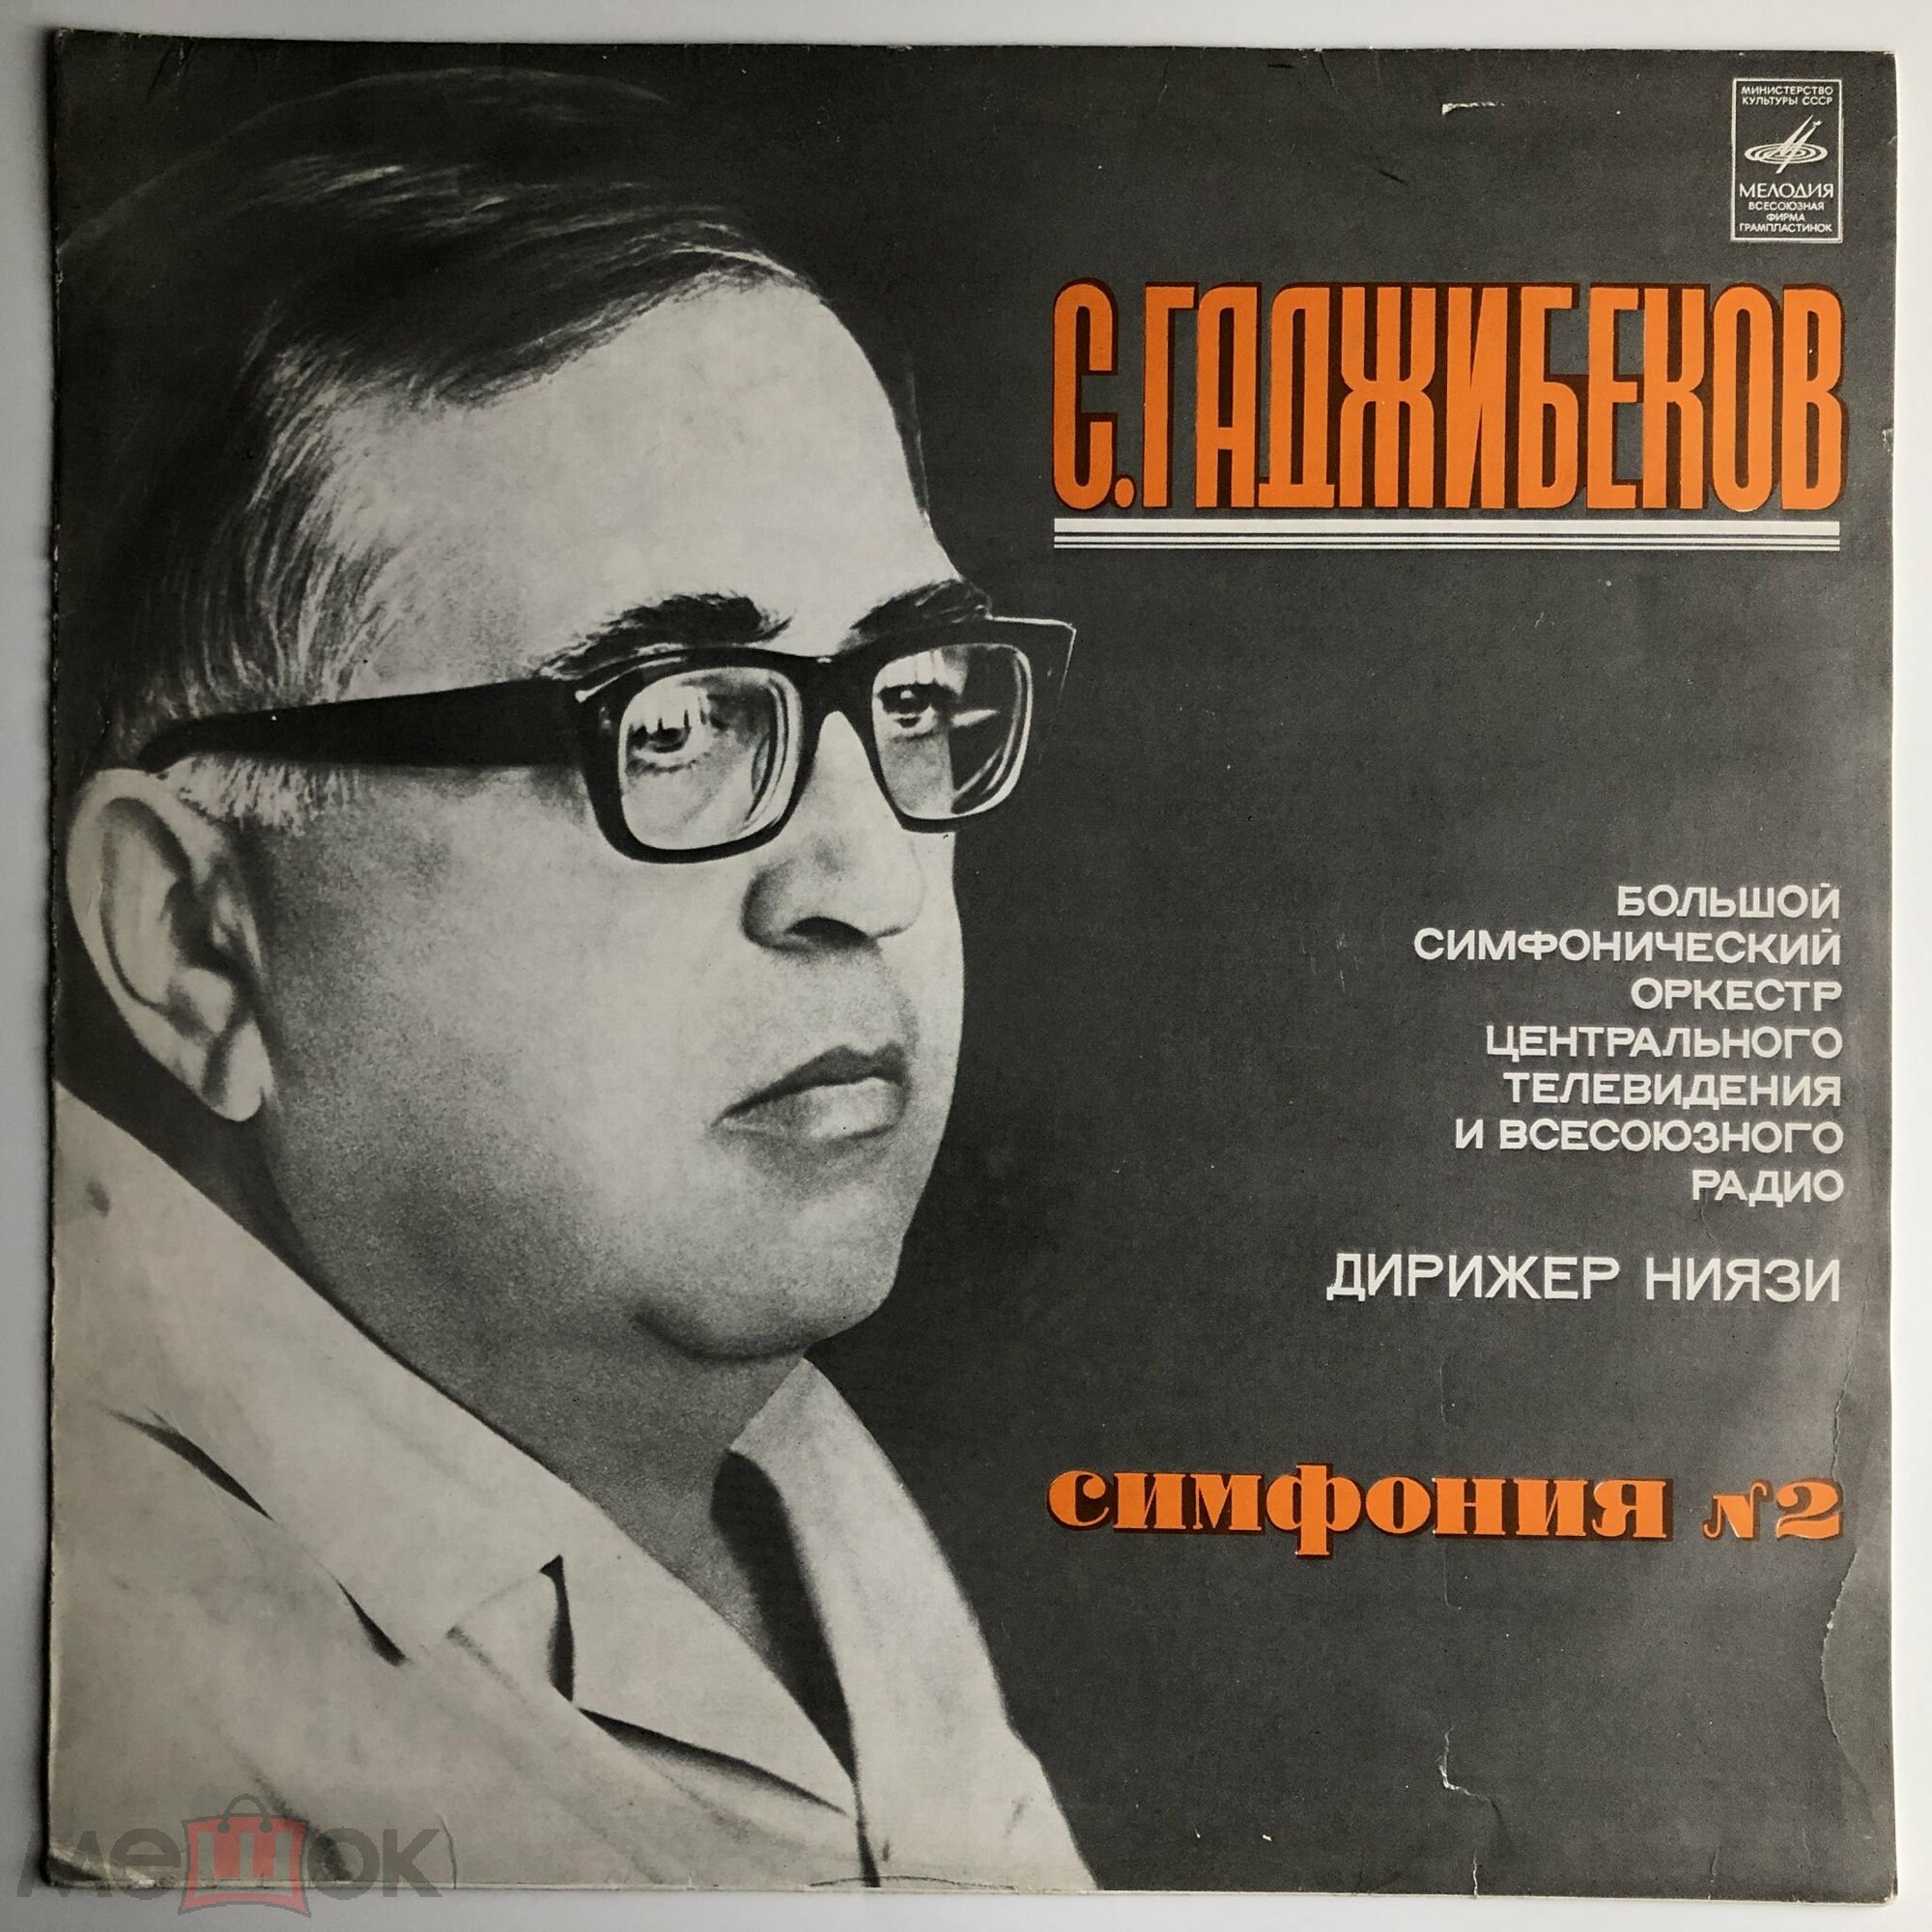 С. ГАДЖИБЕКОВ (1919-1974): Симфония №2